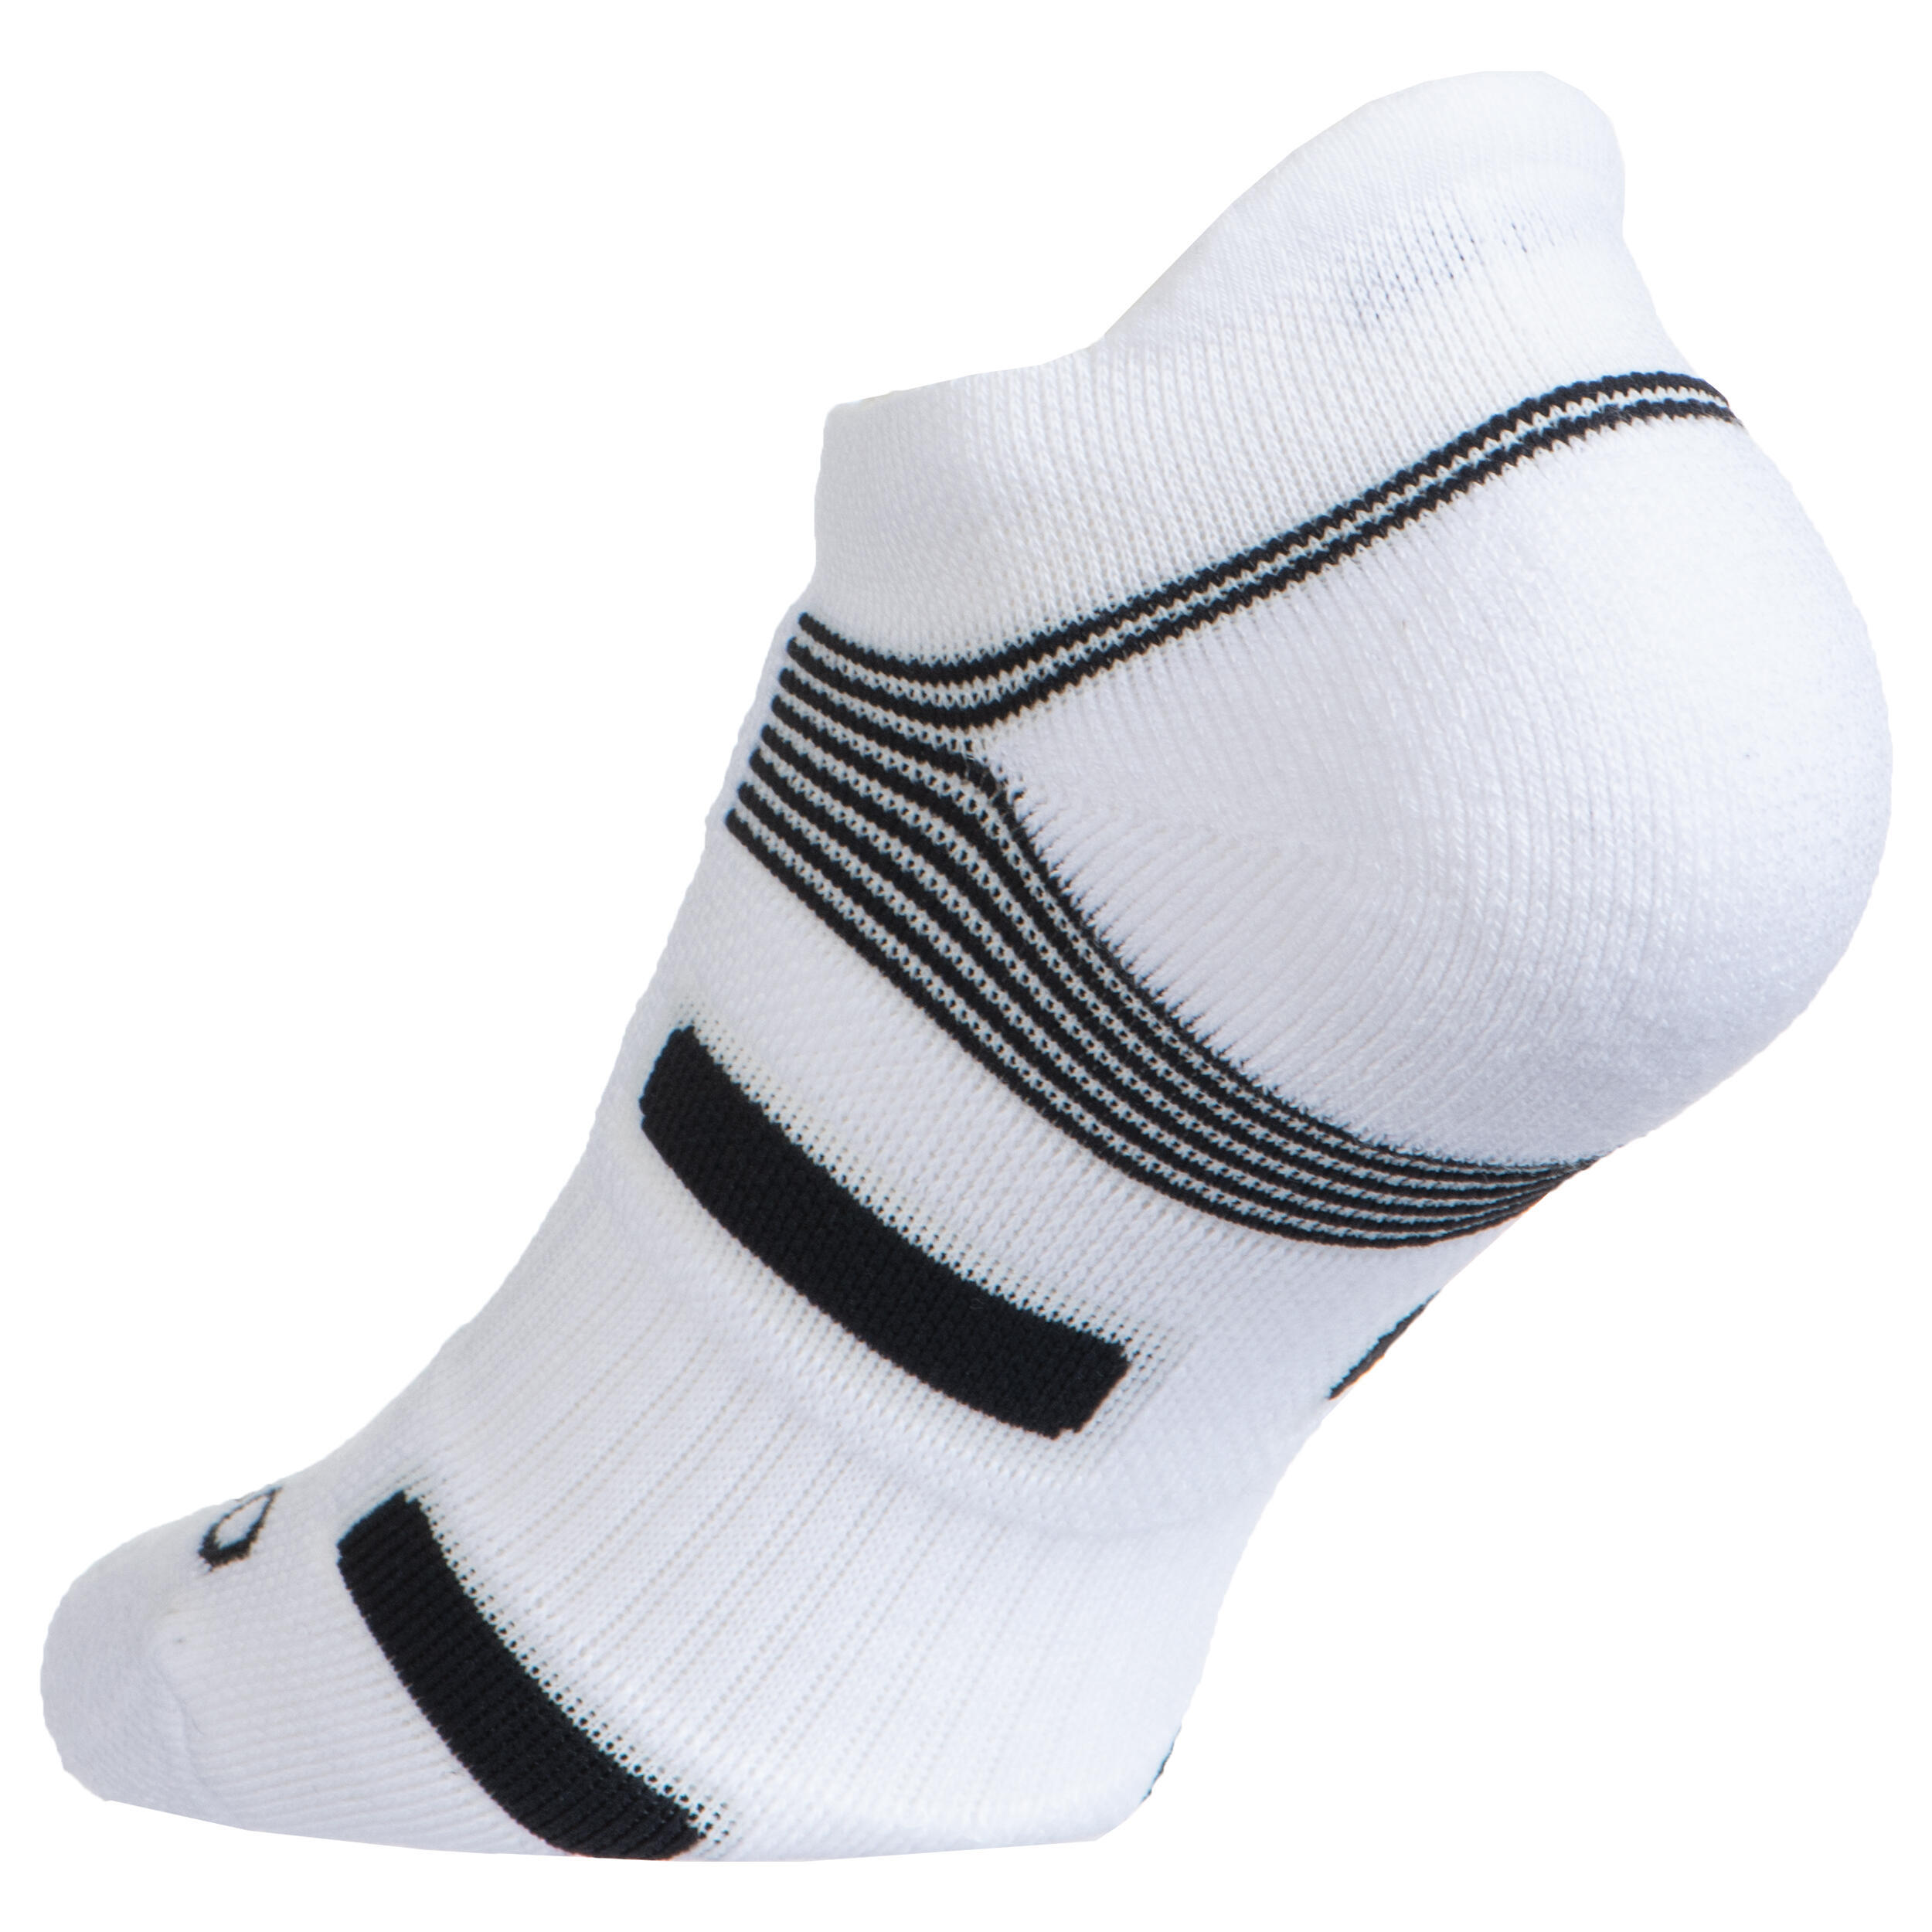 Low Tennis Socks RS 560 Tri-Pack - White/Black 3/9